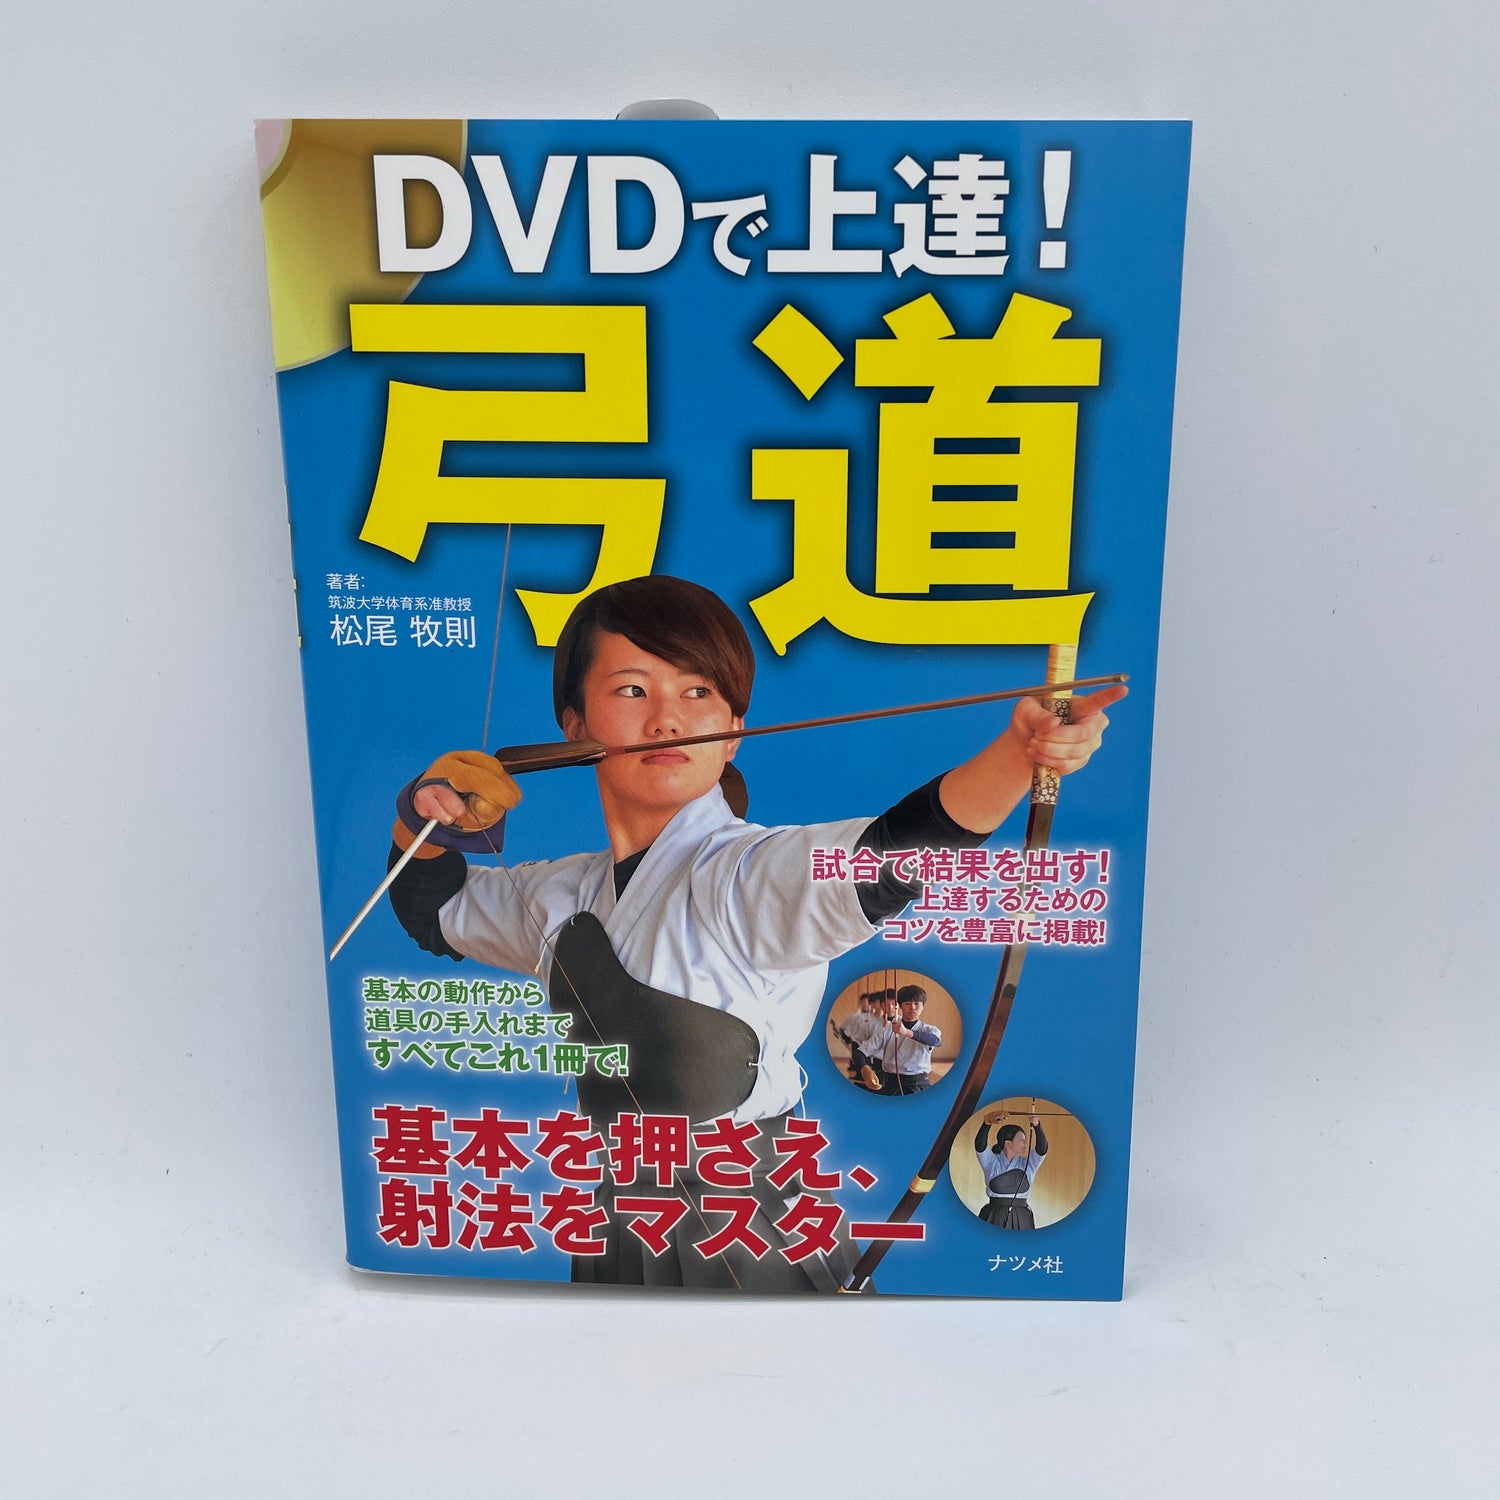 Mejore su libro y DVD de Kyudo de Makinori Matsuo 